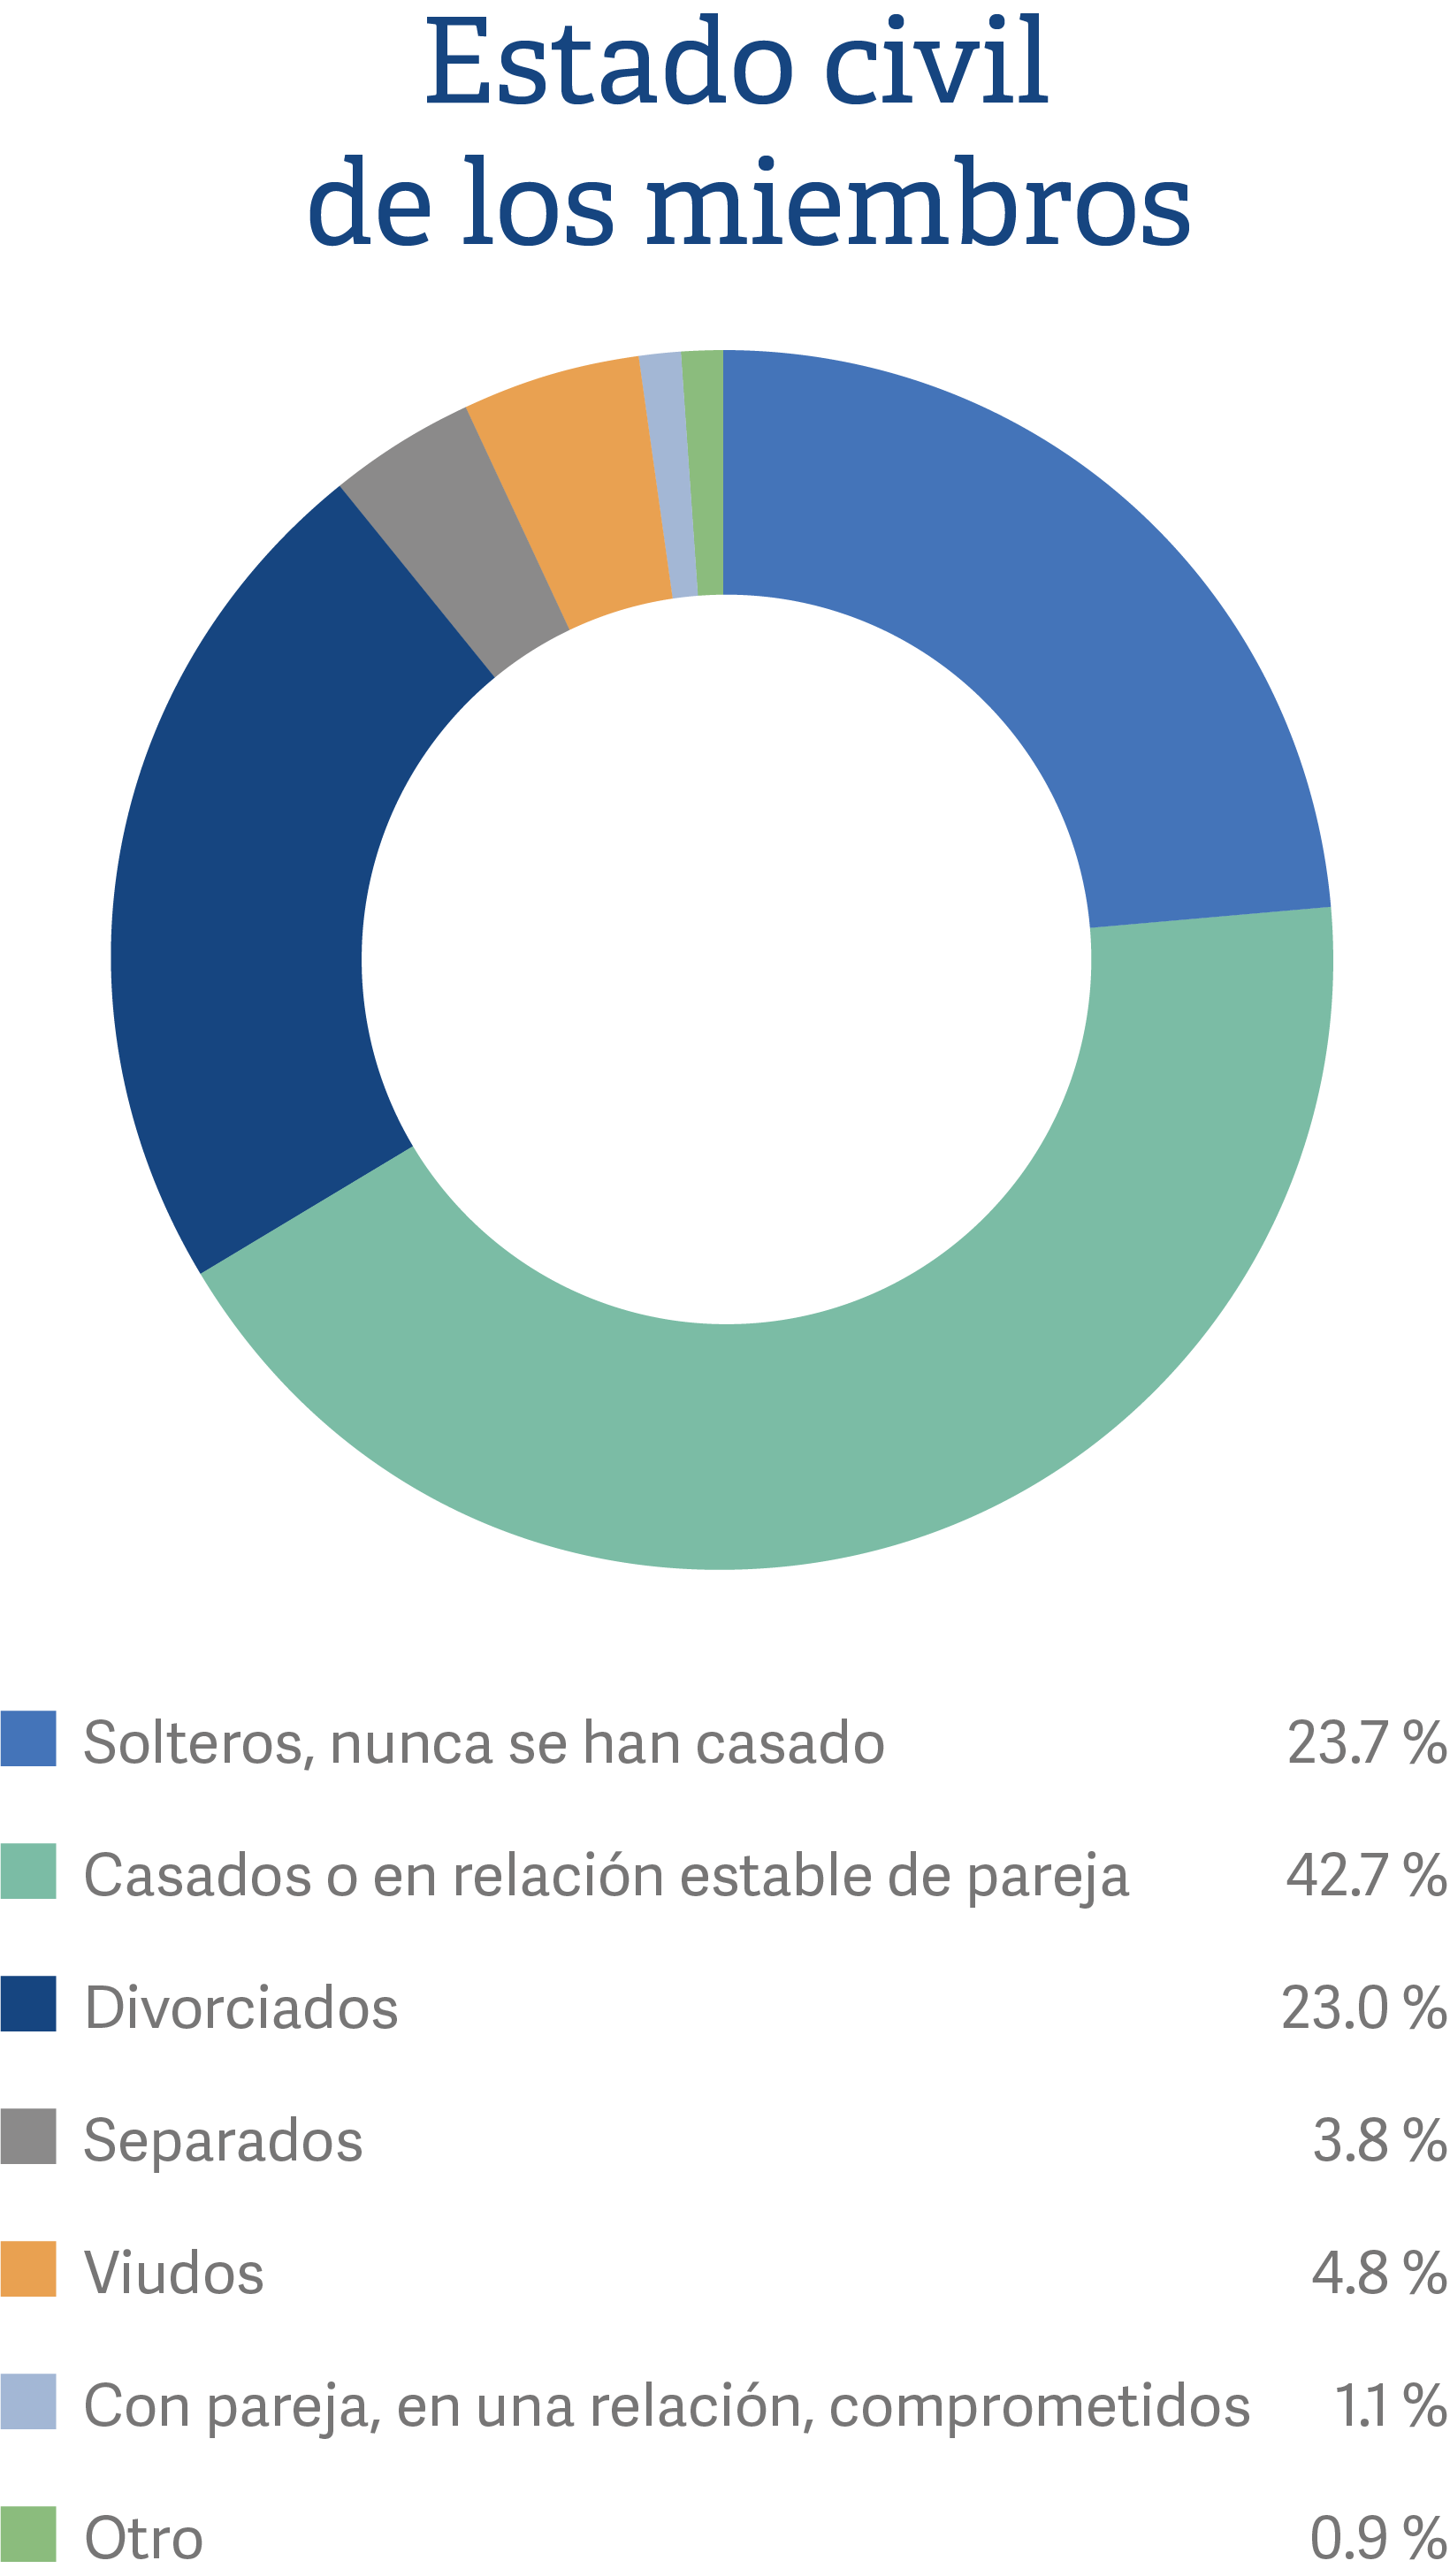 Spanish mobile relationship status of members